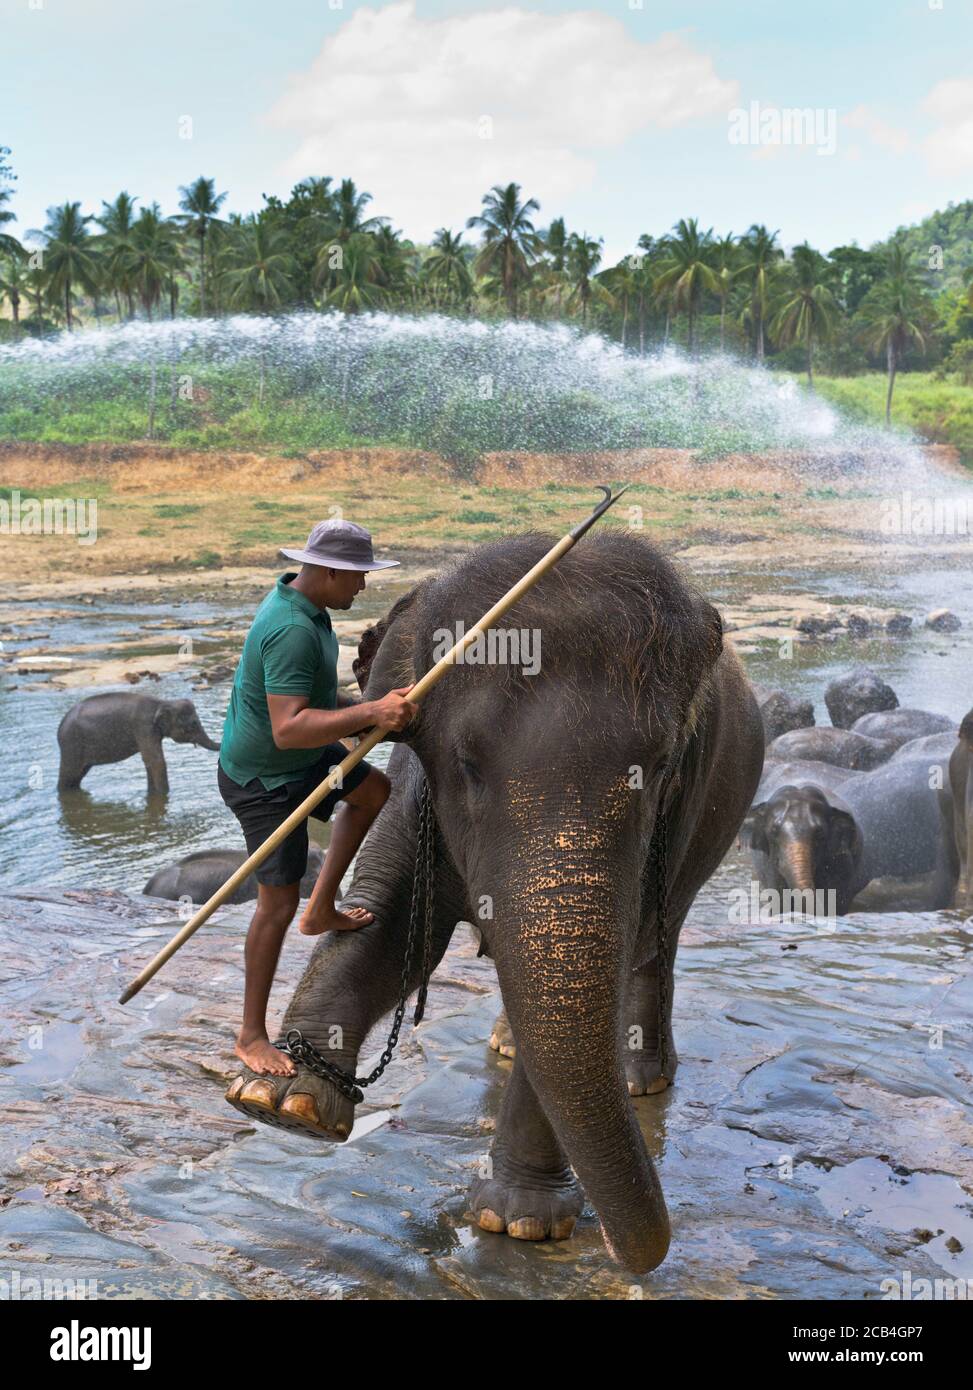 dh Eléphant asiatique orphelinat PINNAWKA SRI LANKA élève éléphants gardien le pied de montage du pilote se soulève en montant en montant le trou d'eau man Banque D'Images